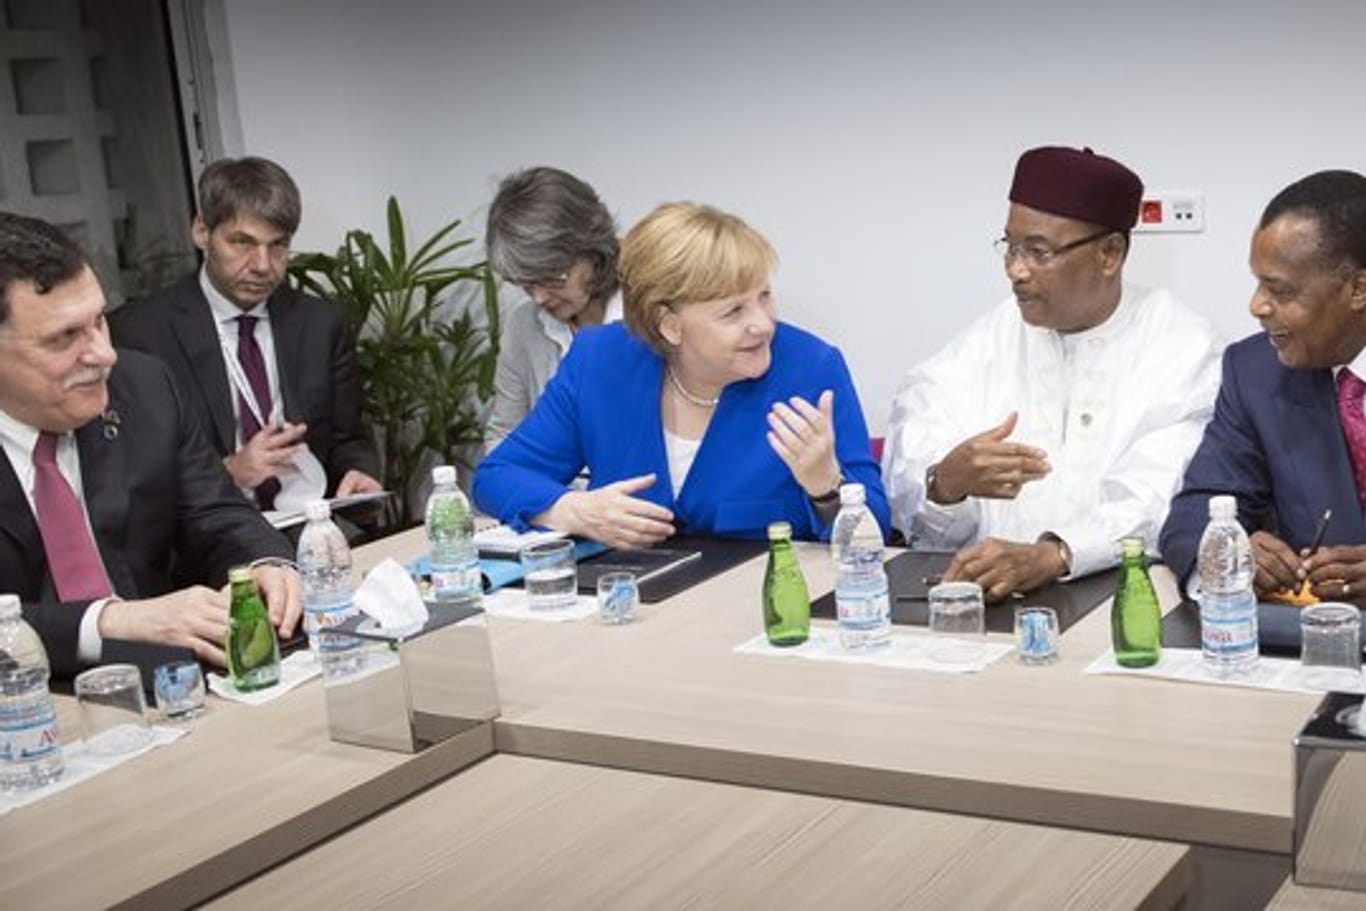 Bundeskanzlerin Angela Merkel bespricht sich gemeinsam mit dem Präsidenten des Niger, Issoufou Mahamadou (2.